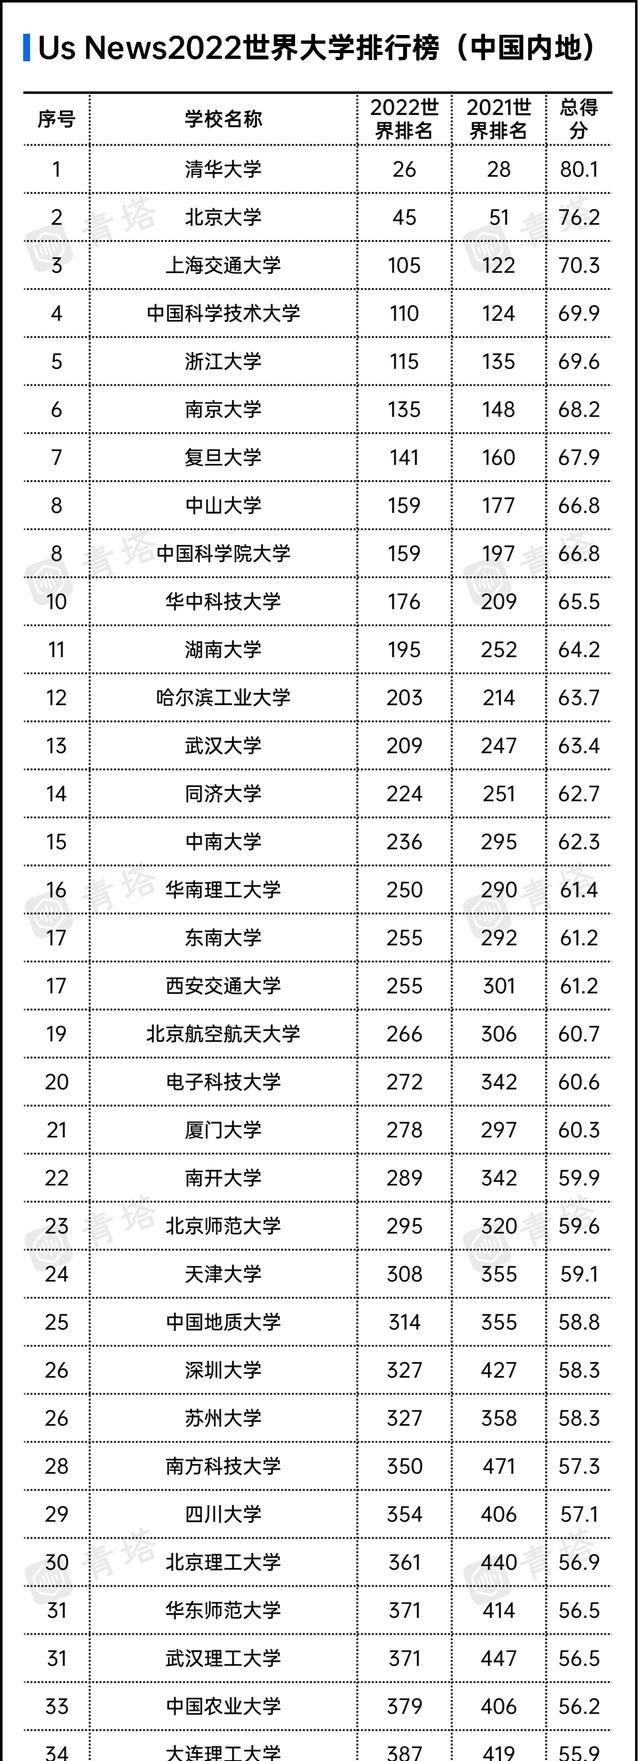 美国人评定的世界大学400强, 35所中国大学入选, 复旦排名141